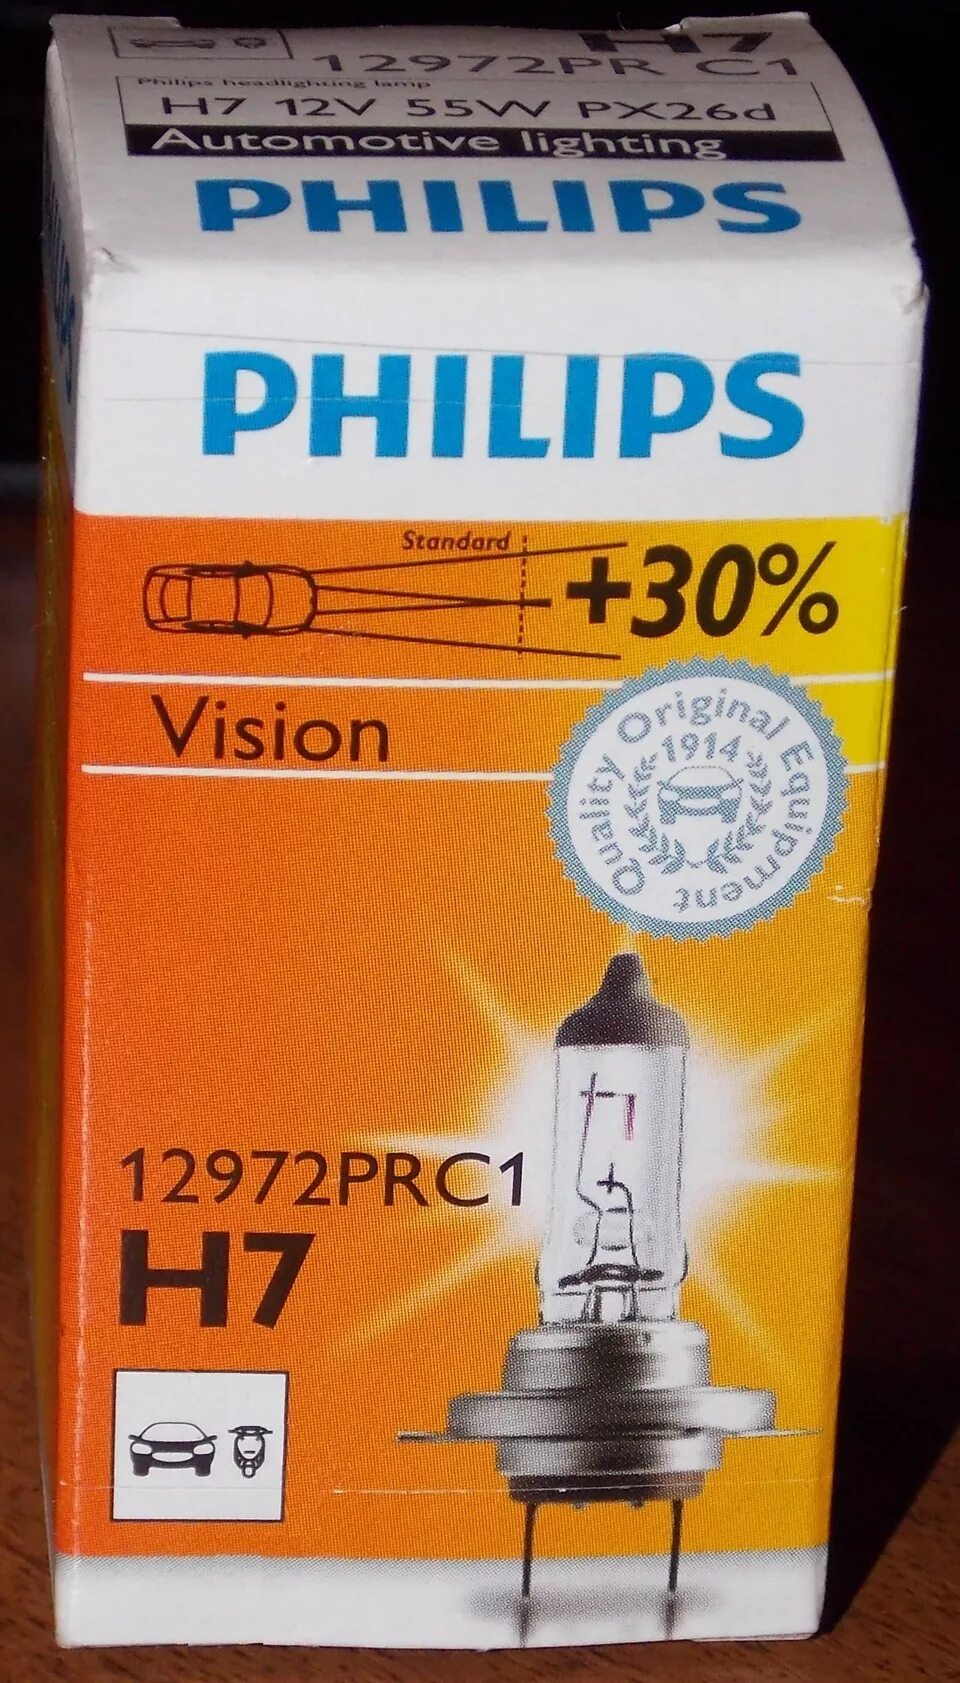 Лампа филипс н7. Лампа ближнего света н7 Филипс. 12972prc1 Philips h7. Лампочки Philips 12972prc1. Филипс +30 h7.